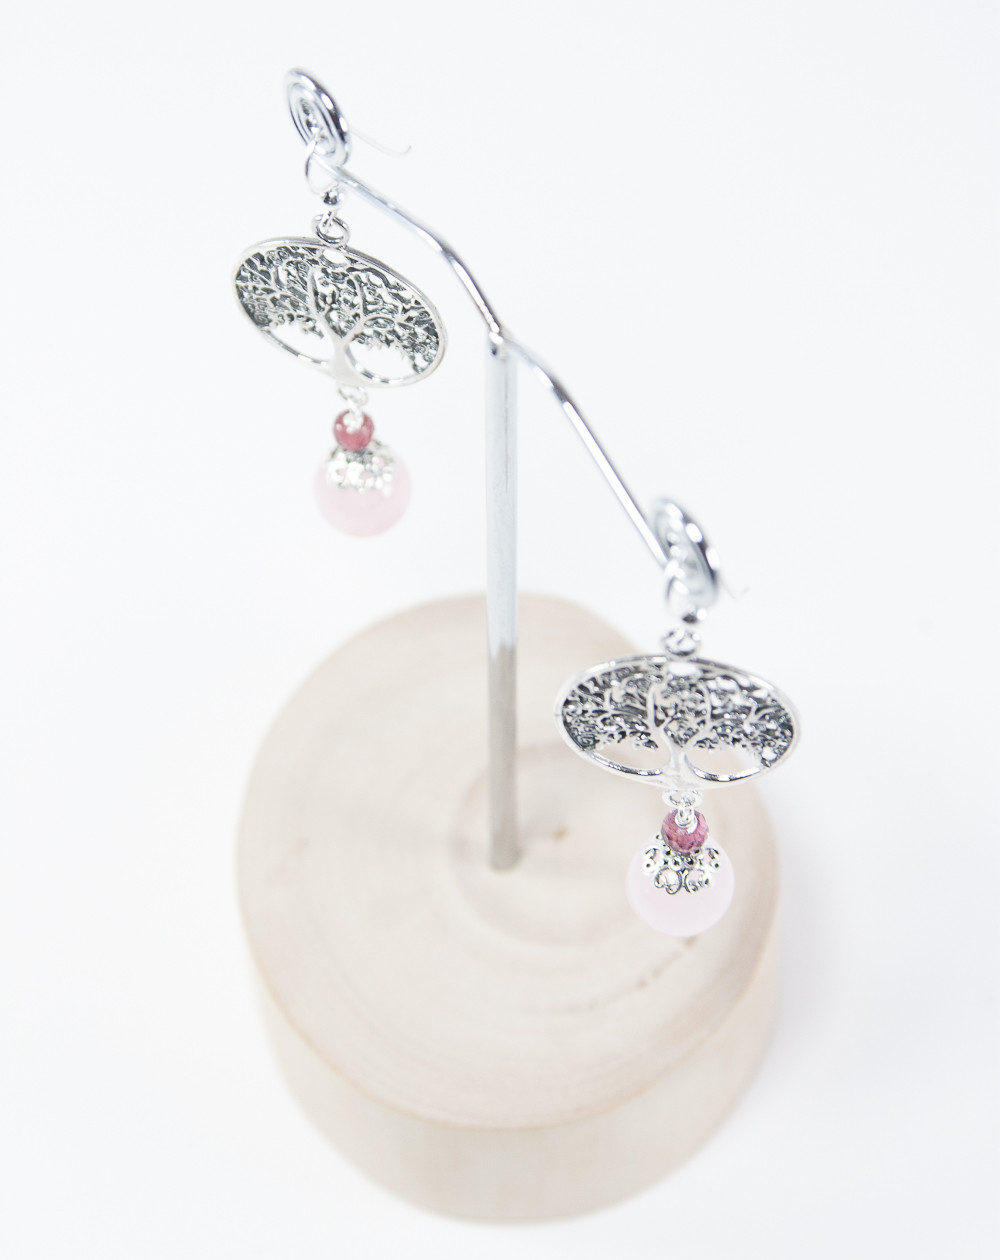 Boucles d'oreilles arbre de vie Quartz Rose, Collection Kimua. Sanuk Création